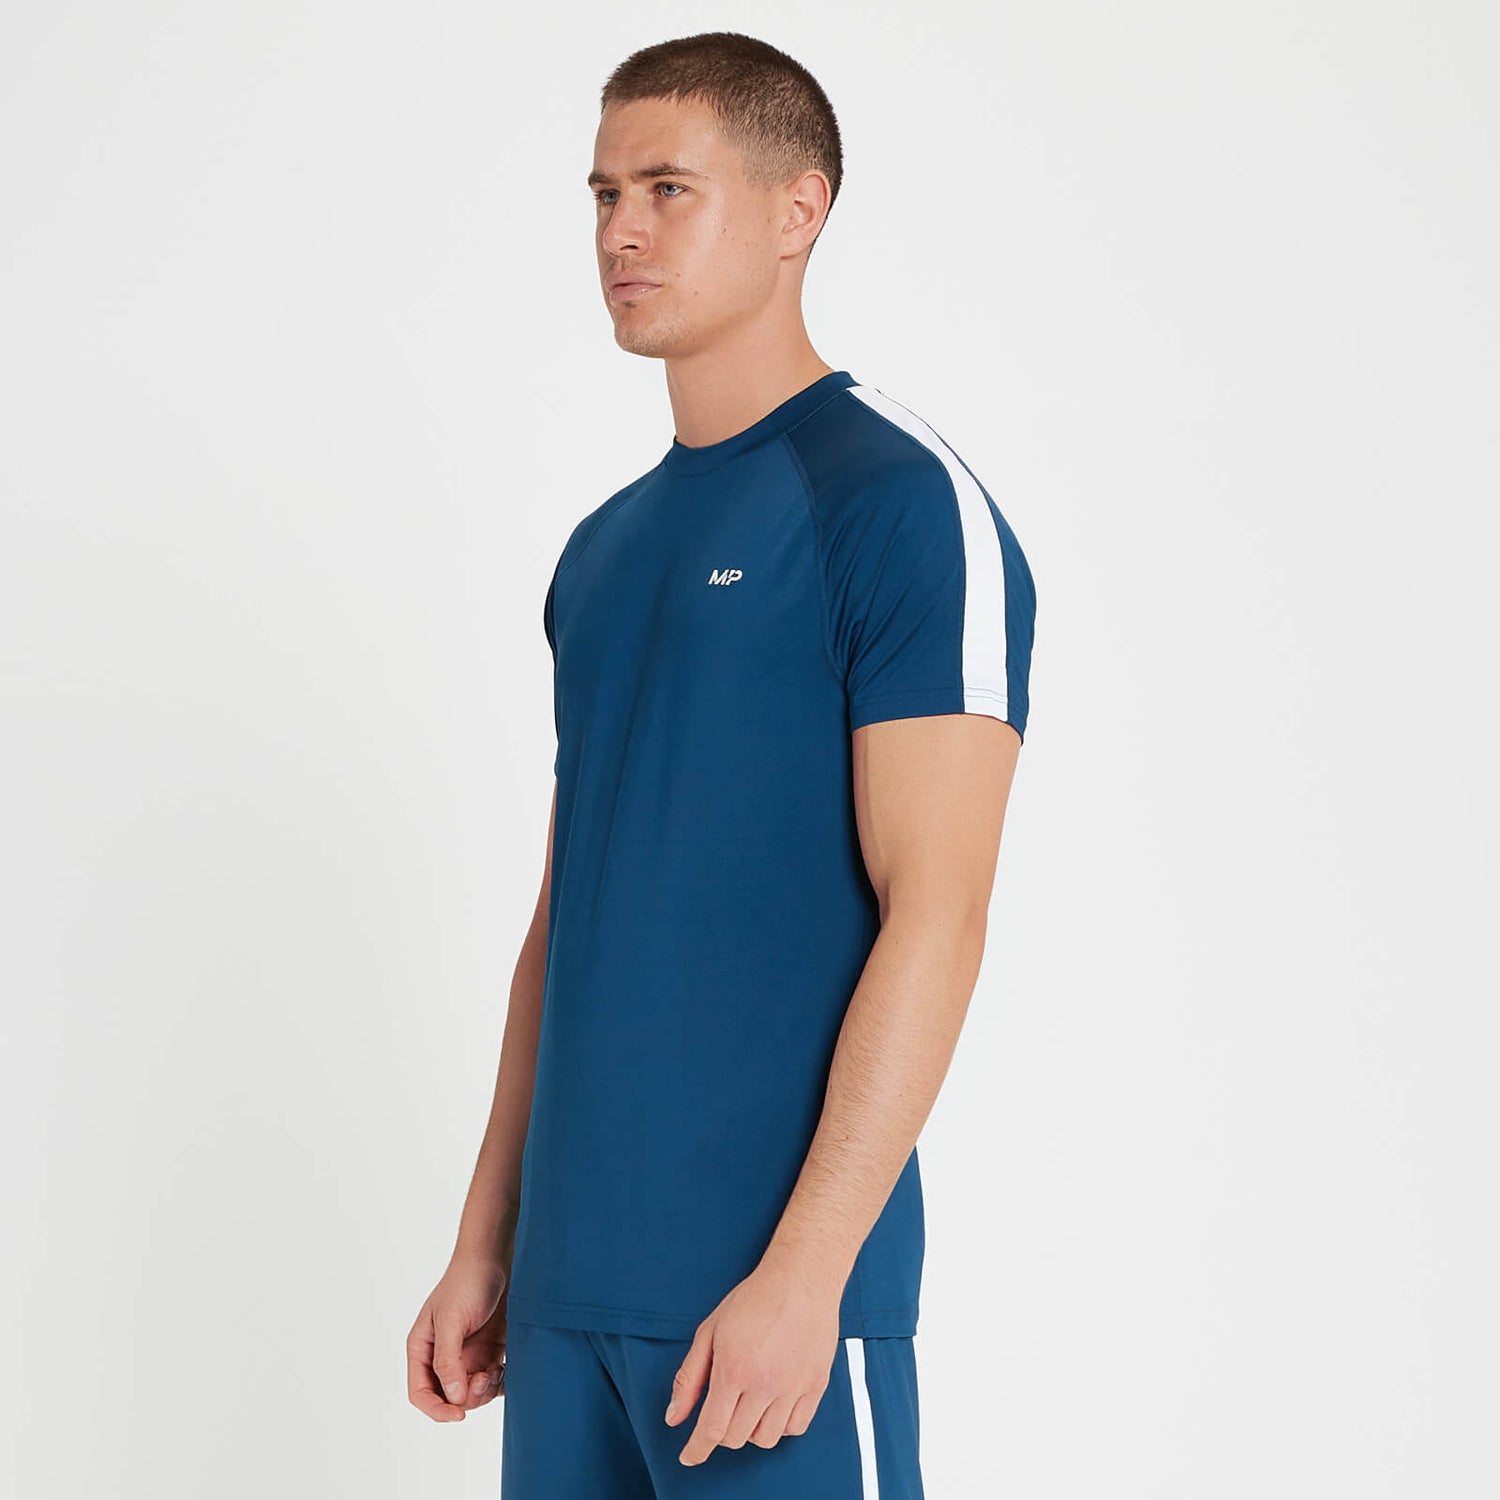 Мужская футболка с короткими рукавами Tempo от MP — Насыщенный синий